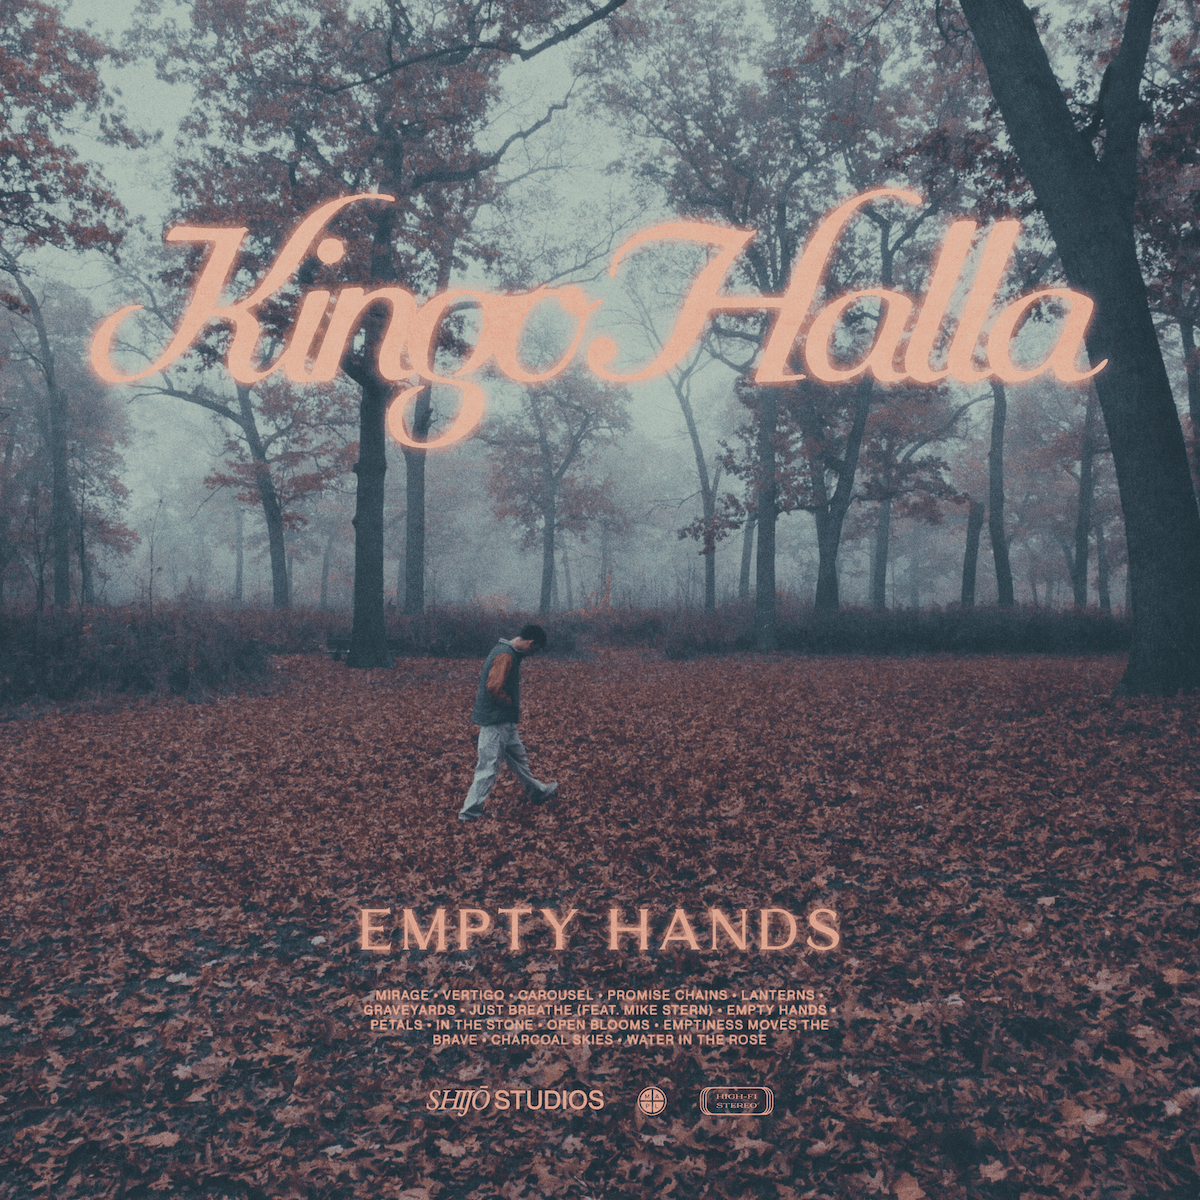 KINGO HALLA EMPTY HANDS FINAL LP COVER-min-min.png